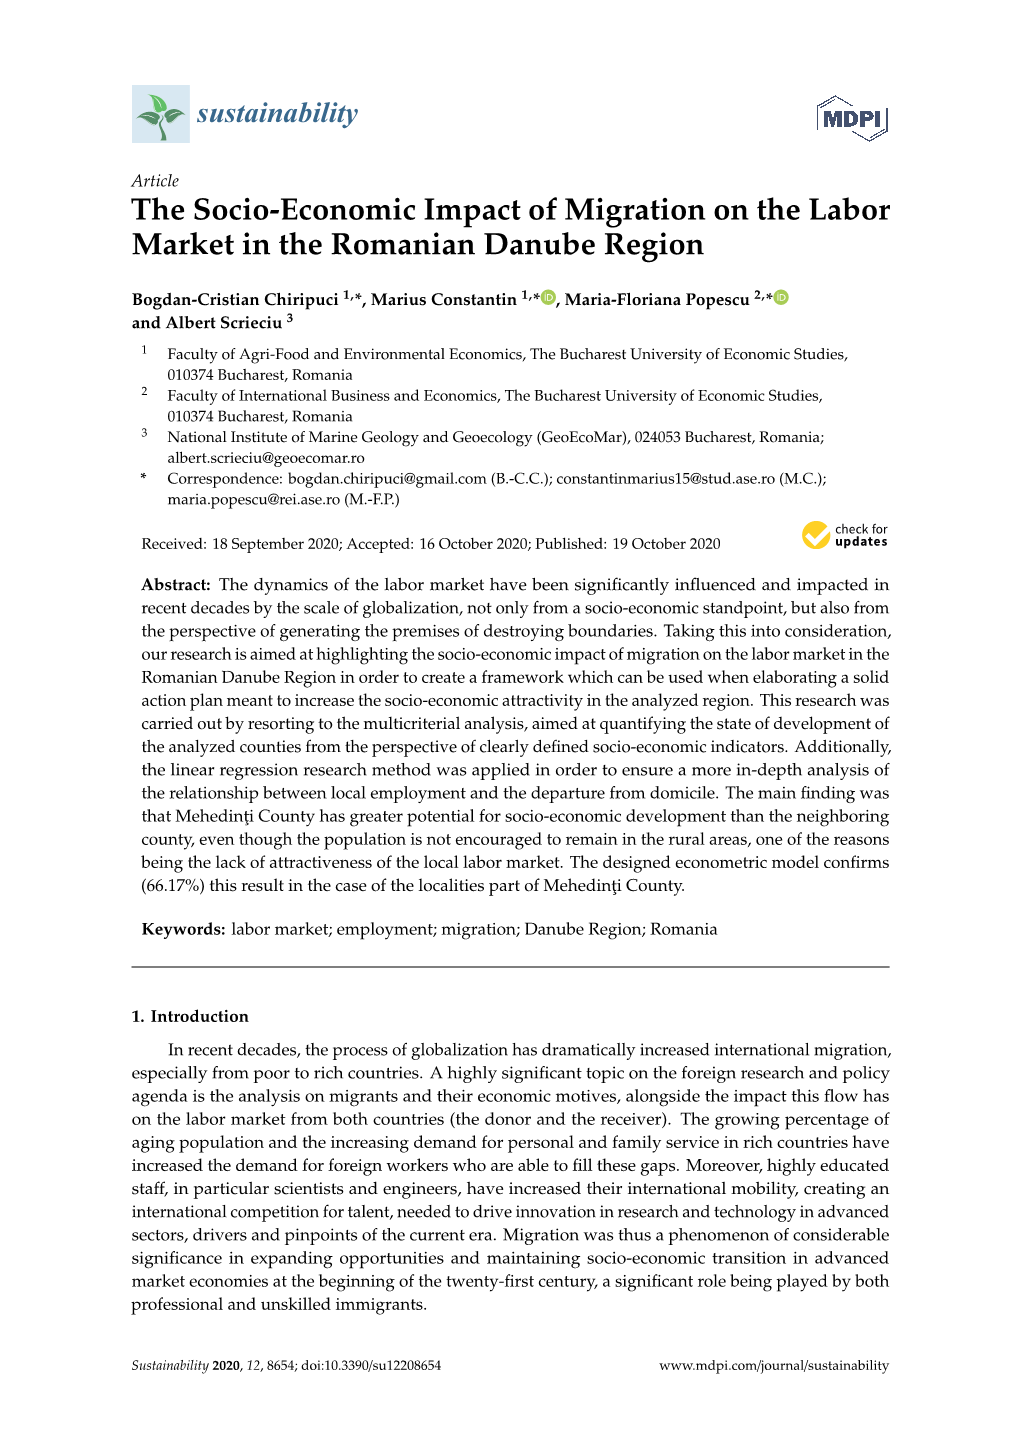 The Socio-Economic Impact of Migration on the Labor Market in the Romanian Danube Region